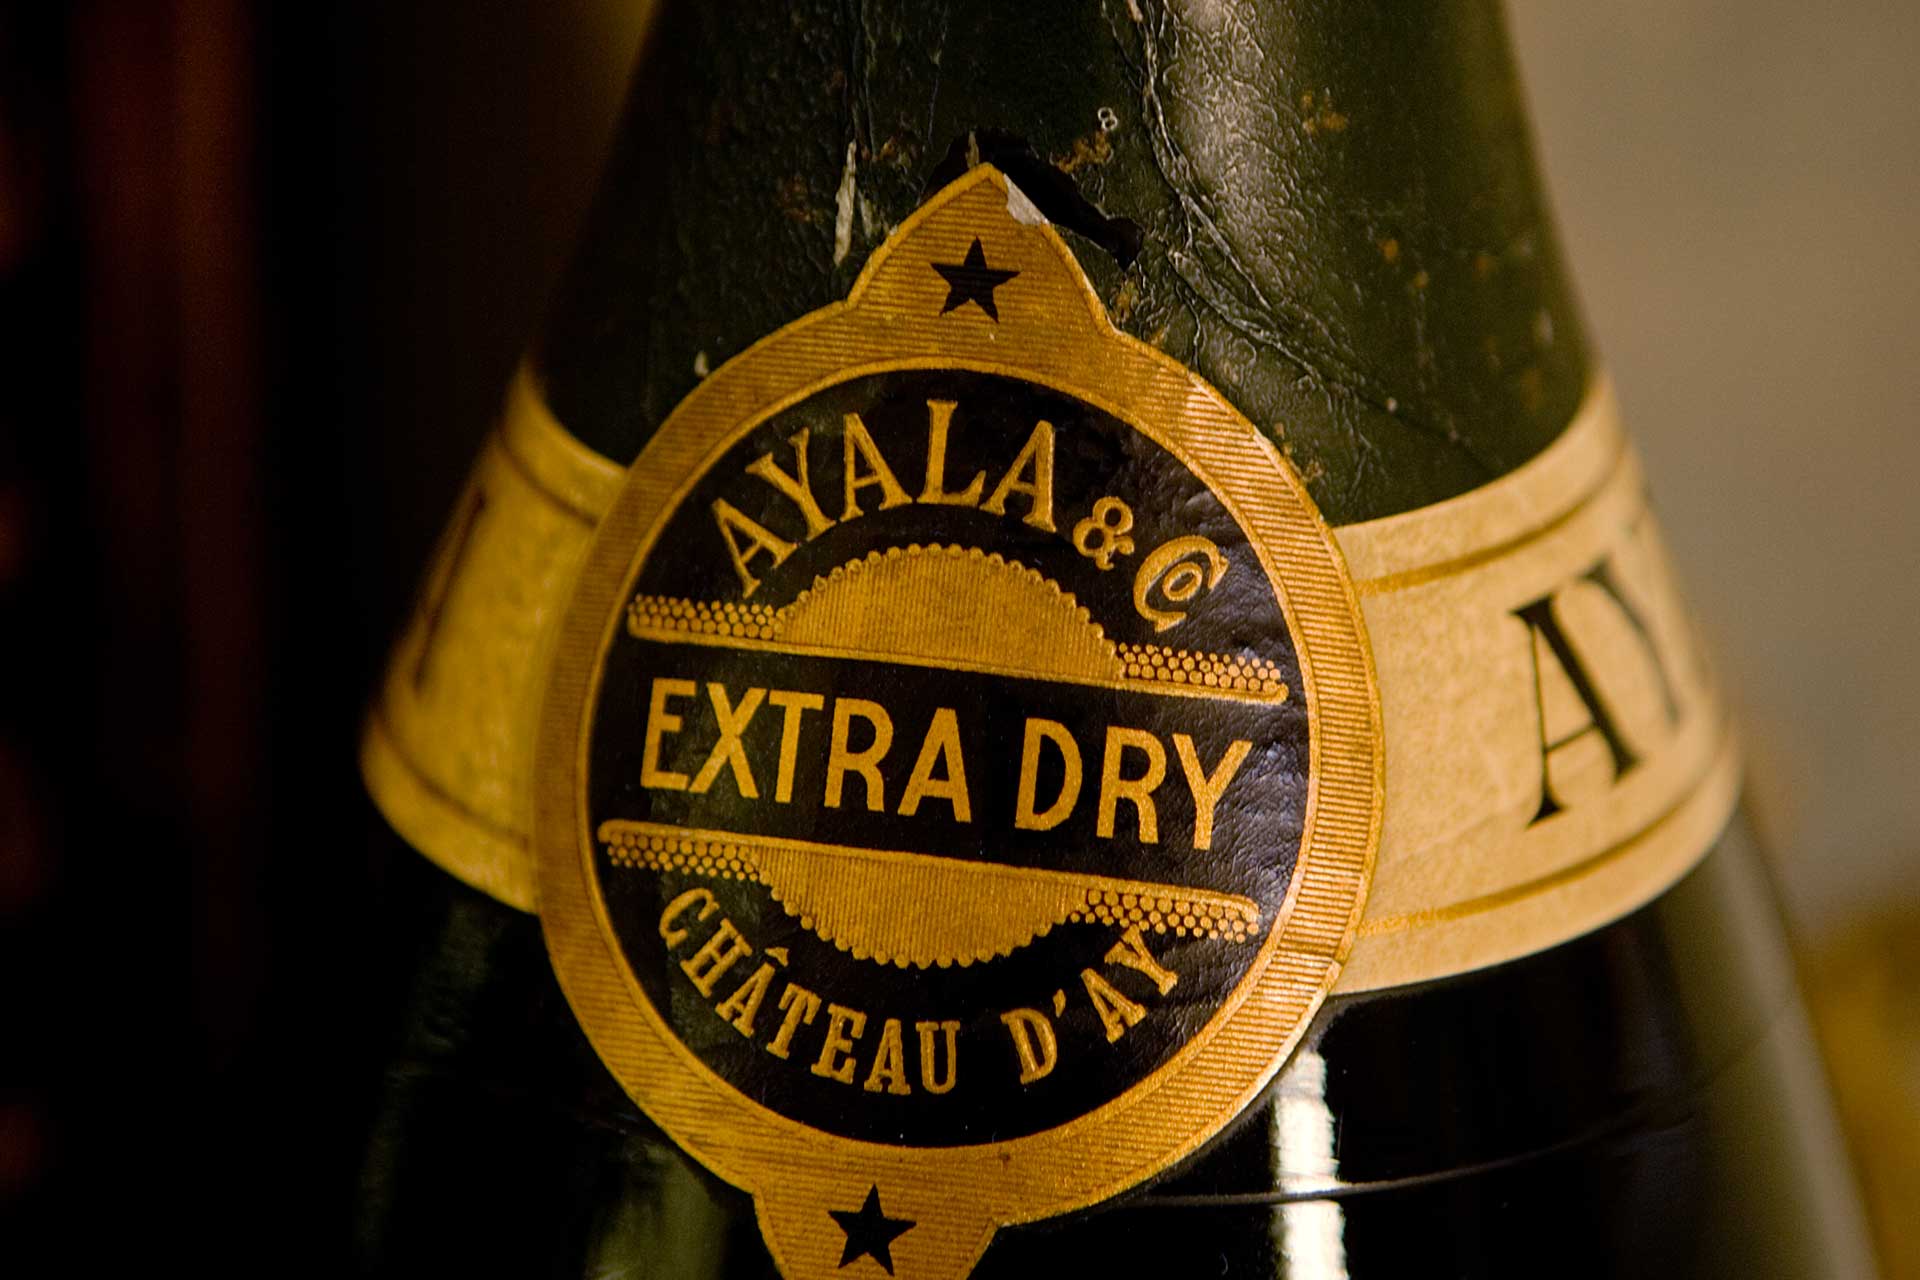 Ayala Geschiedenis van de Champagne